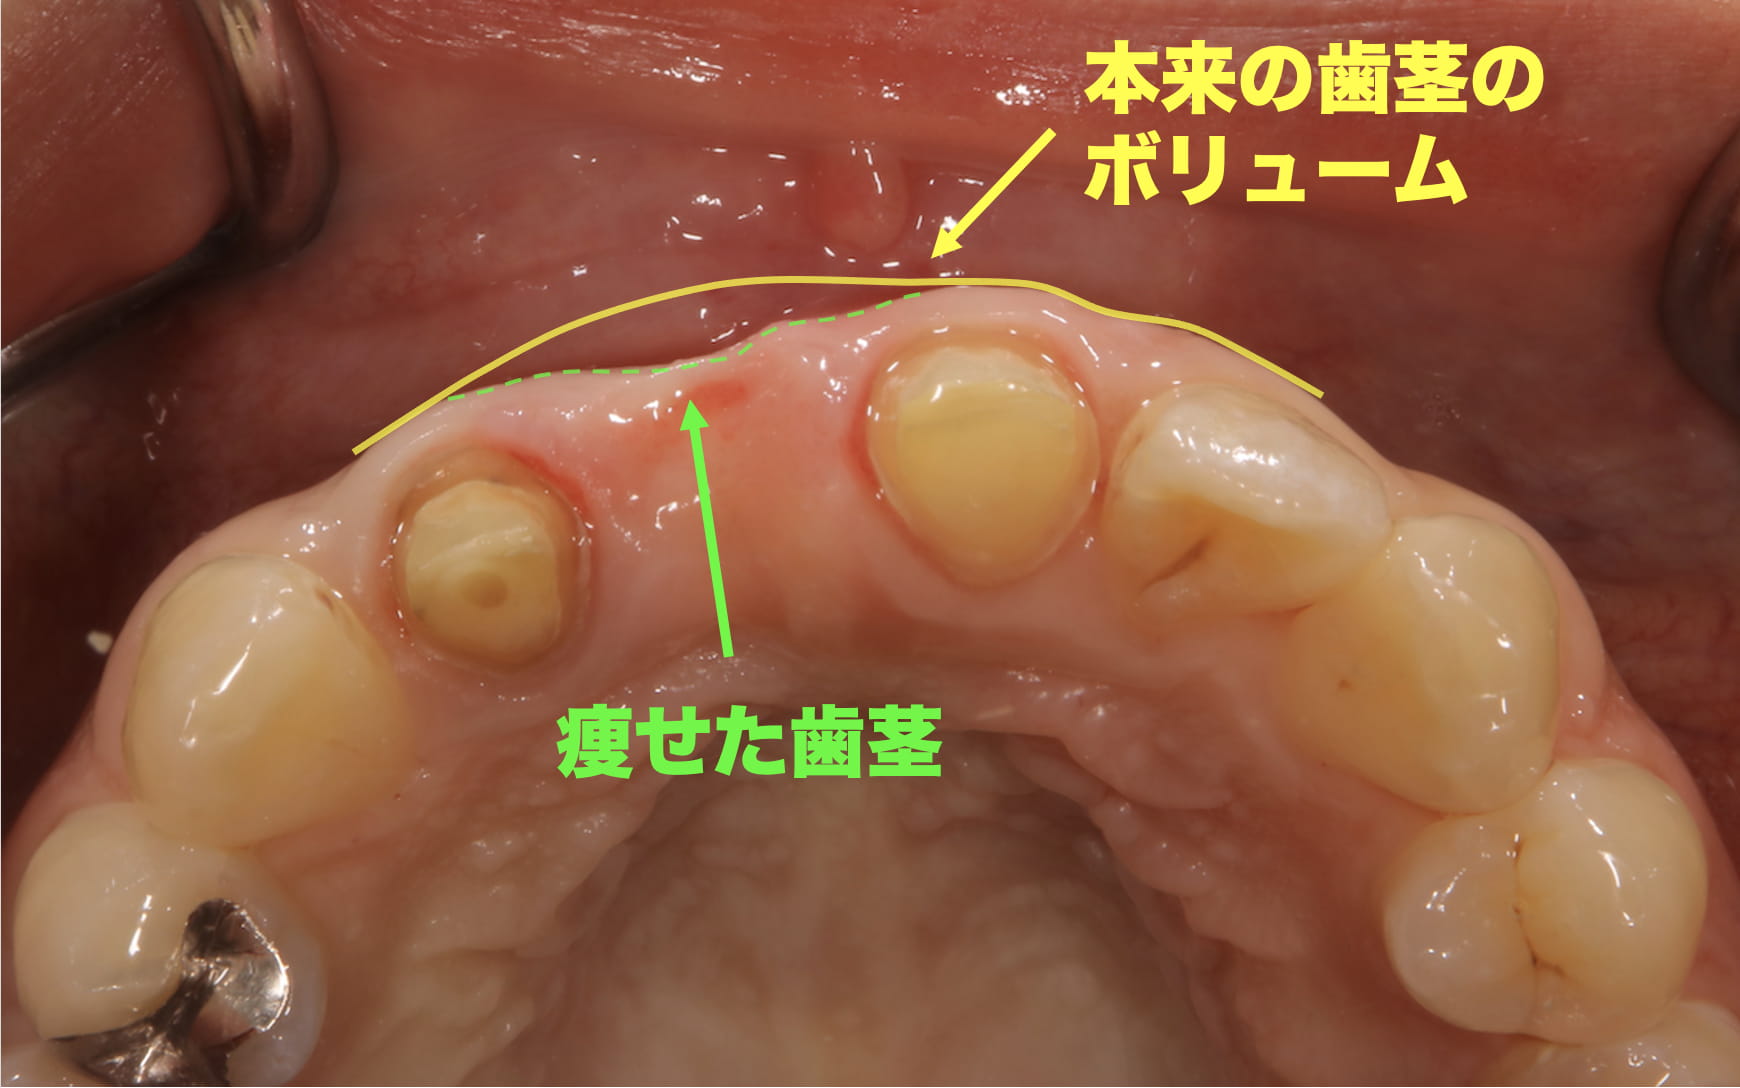 健康な歯茎のボリュームと痩せて凹んだ歯茎のボリュームを比較する症例写真